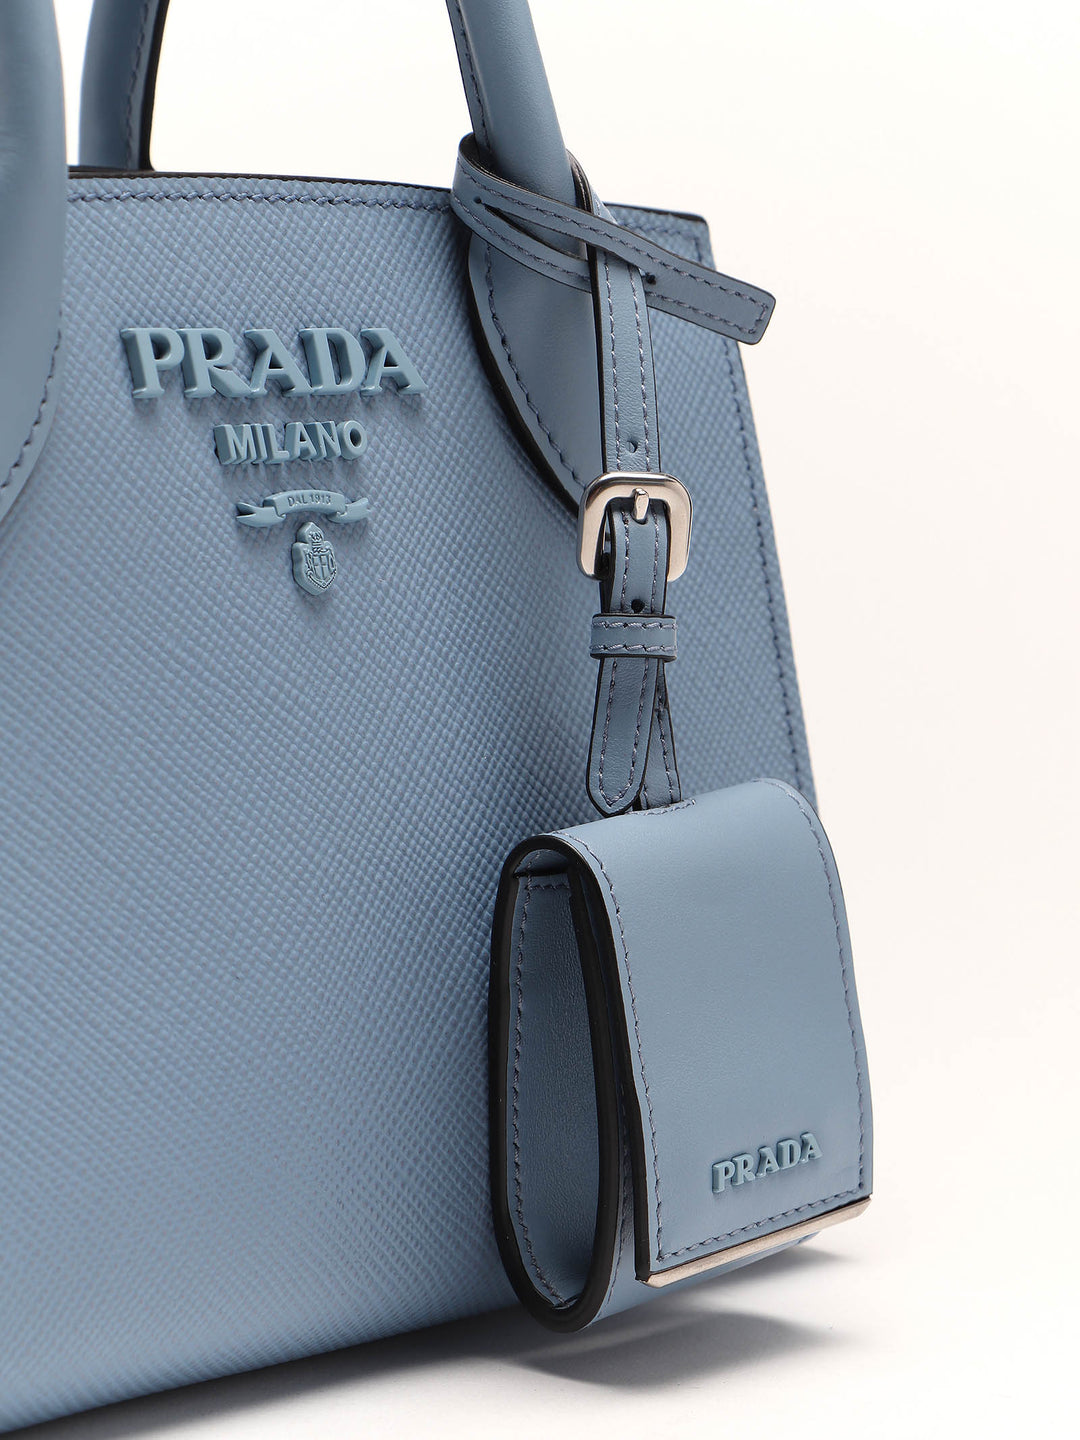 Borsa a mano con cintura lux saffiano monochrome-Prada-Wanan Luxury